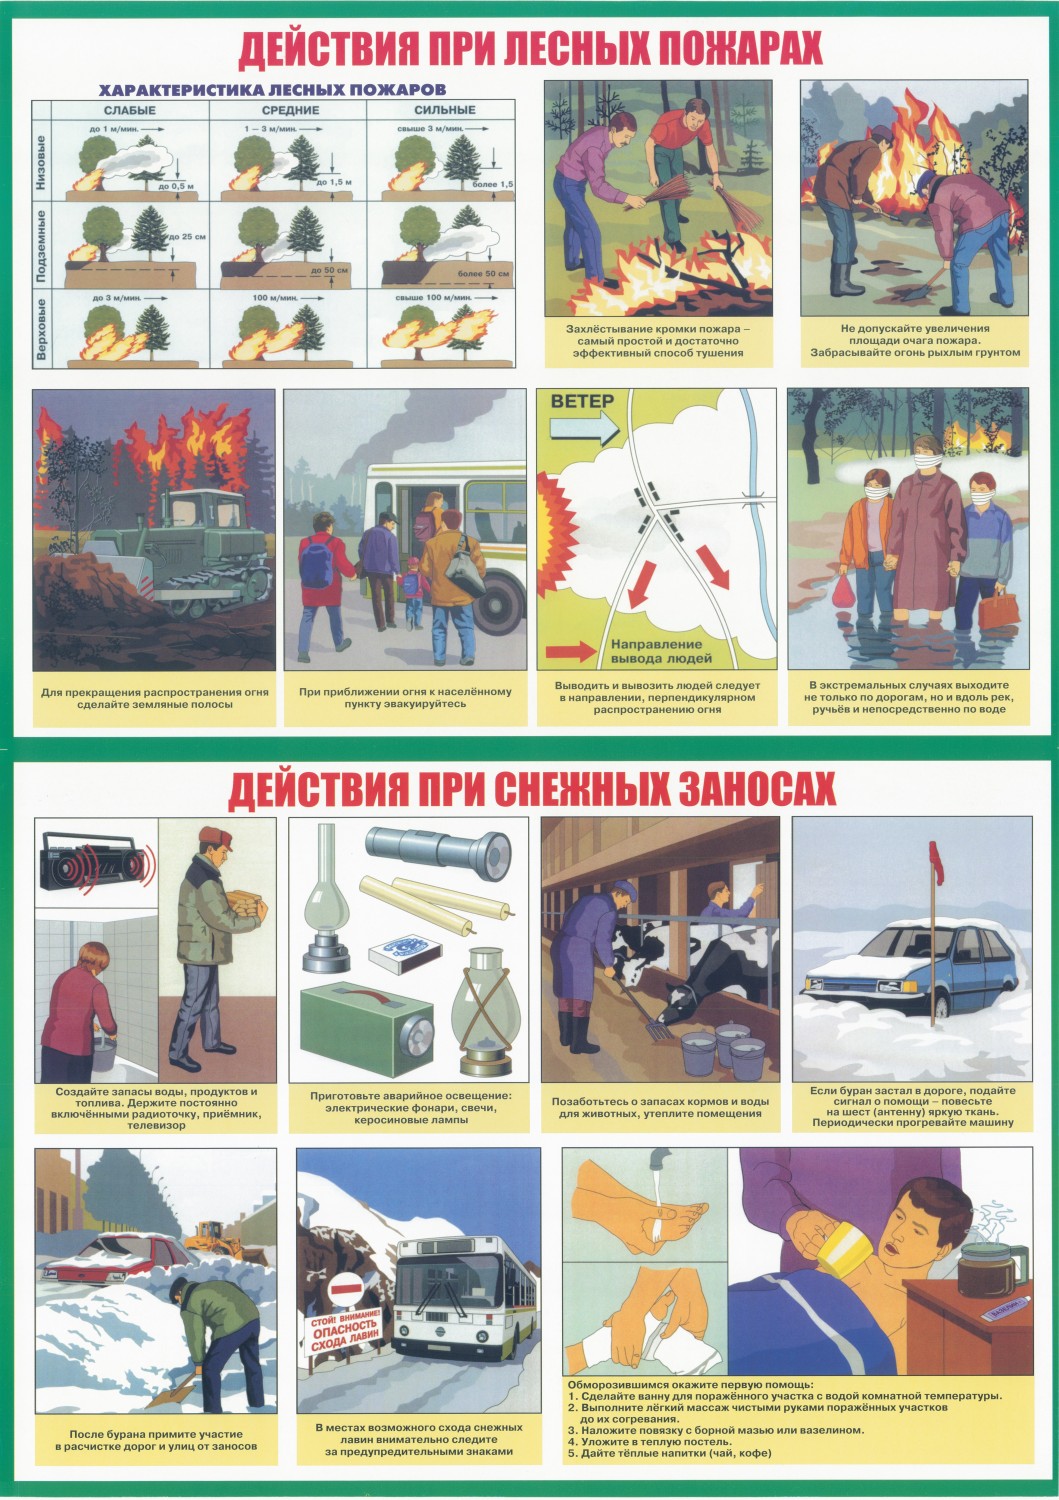 Гражданская оборона стихийные бедствия. Плакаты по чрезвычайным ситуациям. Плакаты при чрезвычайных ситуациях. Действия при го и ЧС. Го и ЧС плакаты для детей.